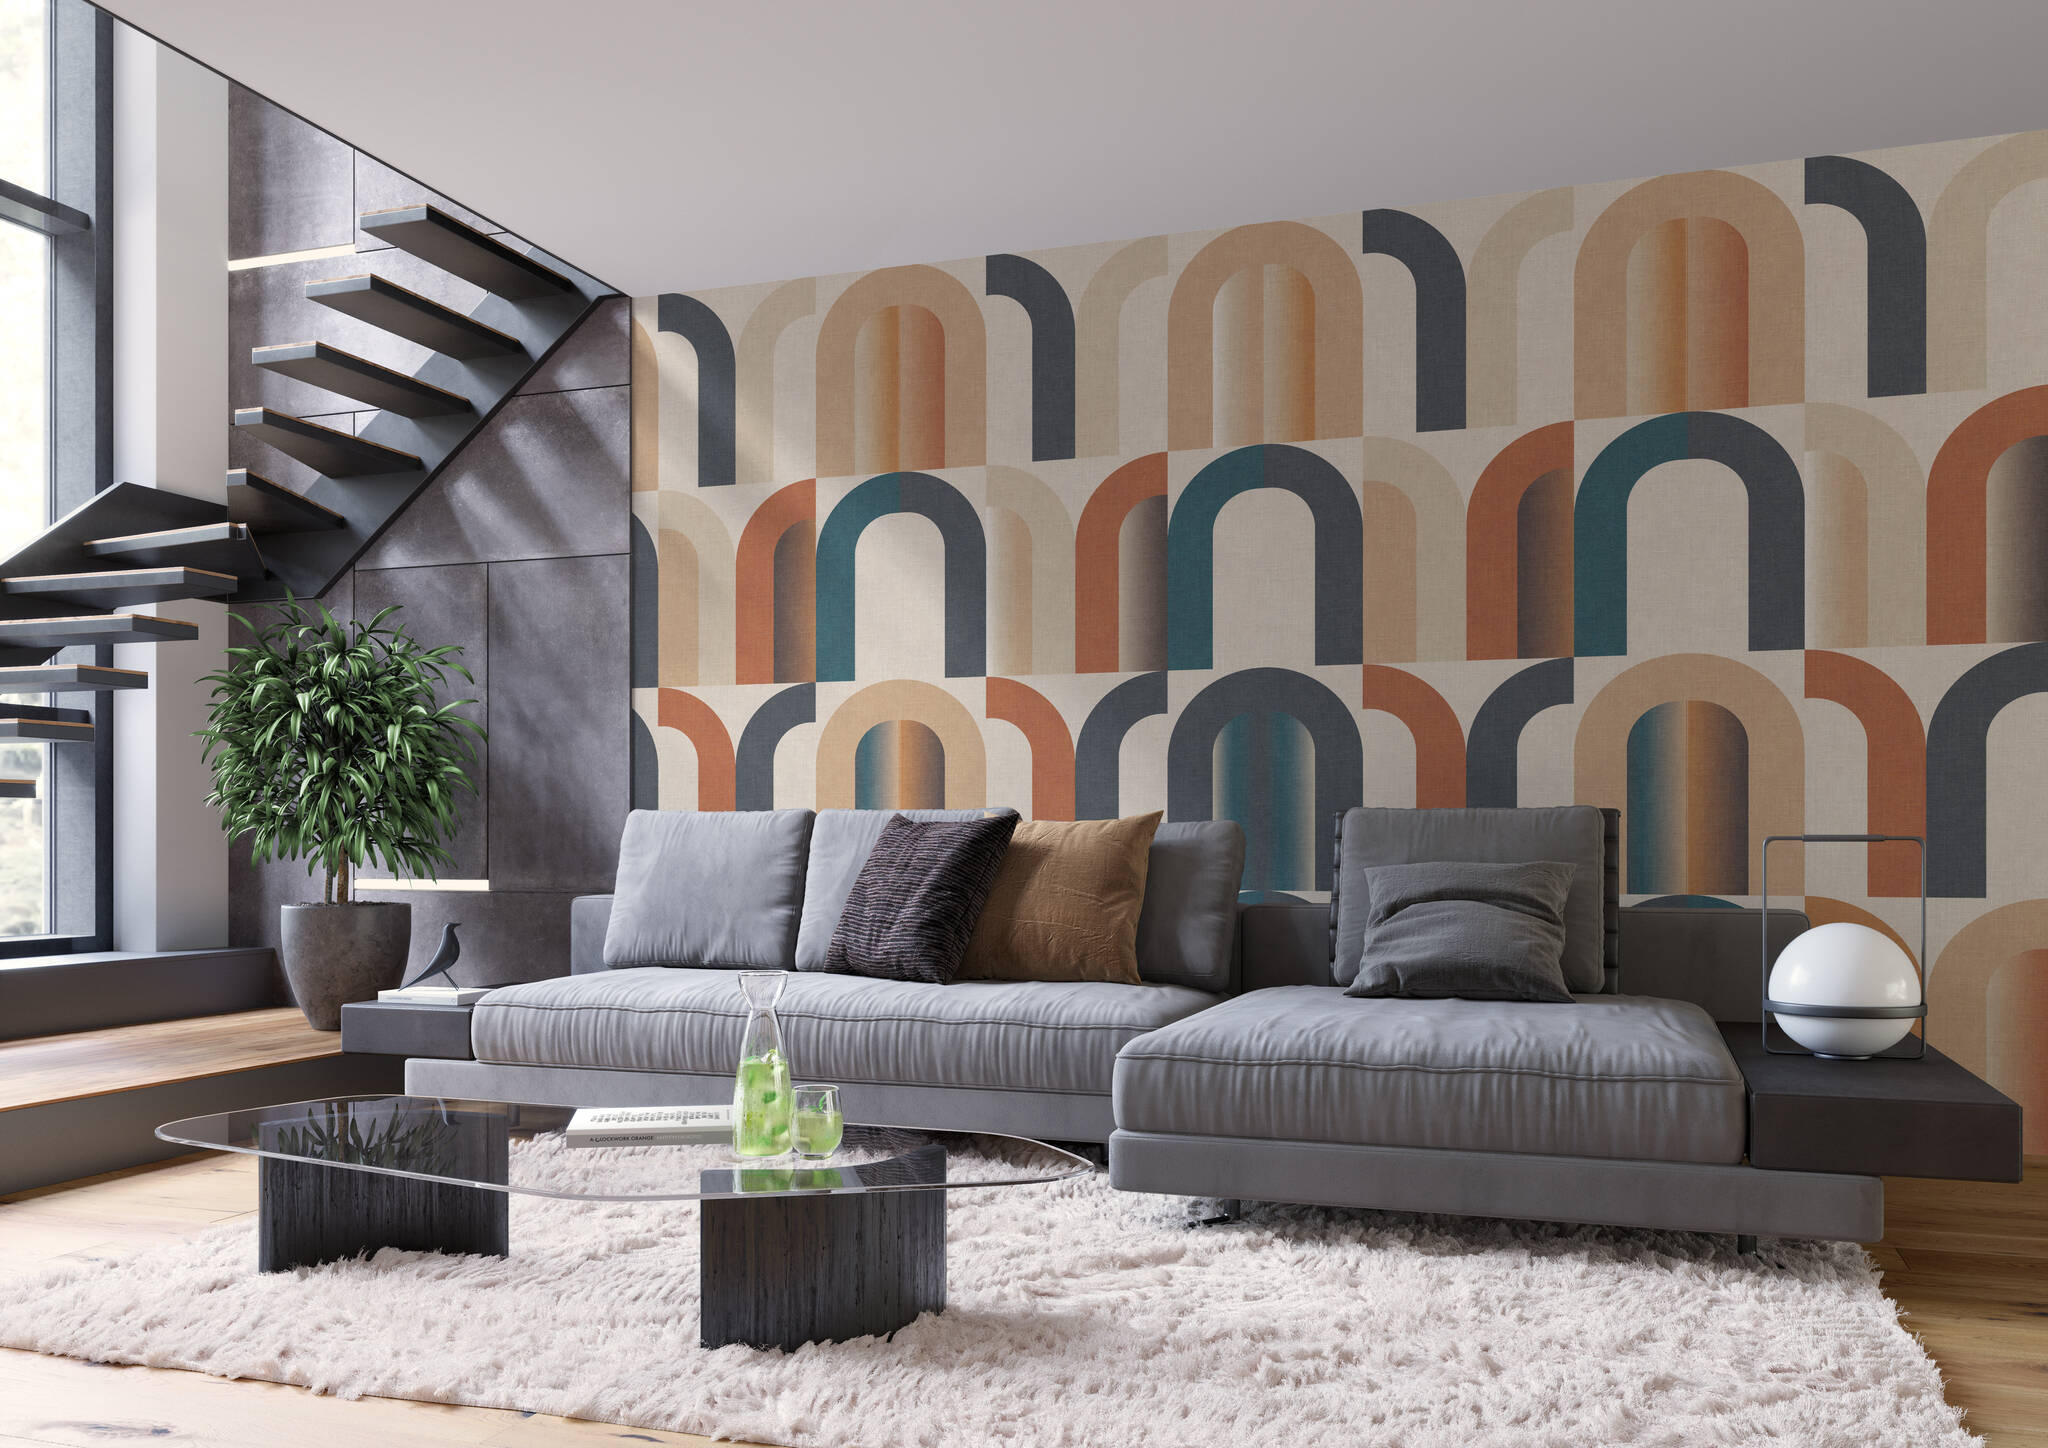 Wohnzimmer mit Wandbild - Geometrische Bögen mit Retro-Touch in Gold, Messing und blau